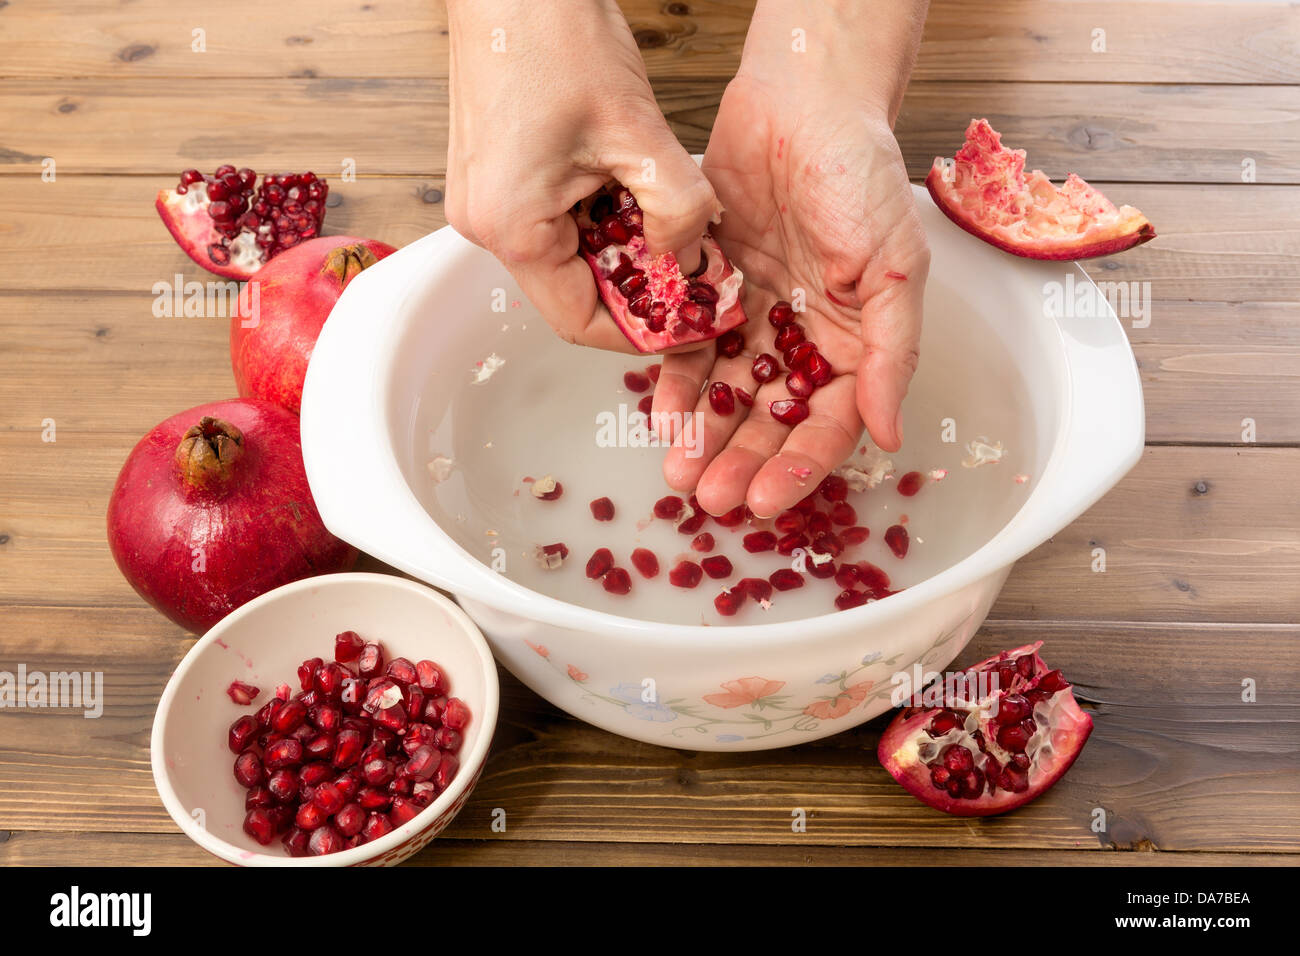 Hände, die Granatapfel-Samen in eine Schüssel mit Wasser für die Herstellung von Saft zu sammeln Stockfoto